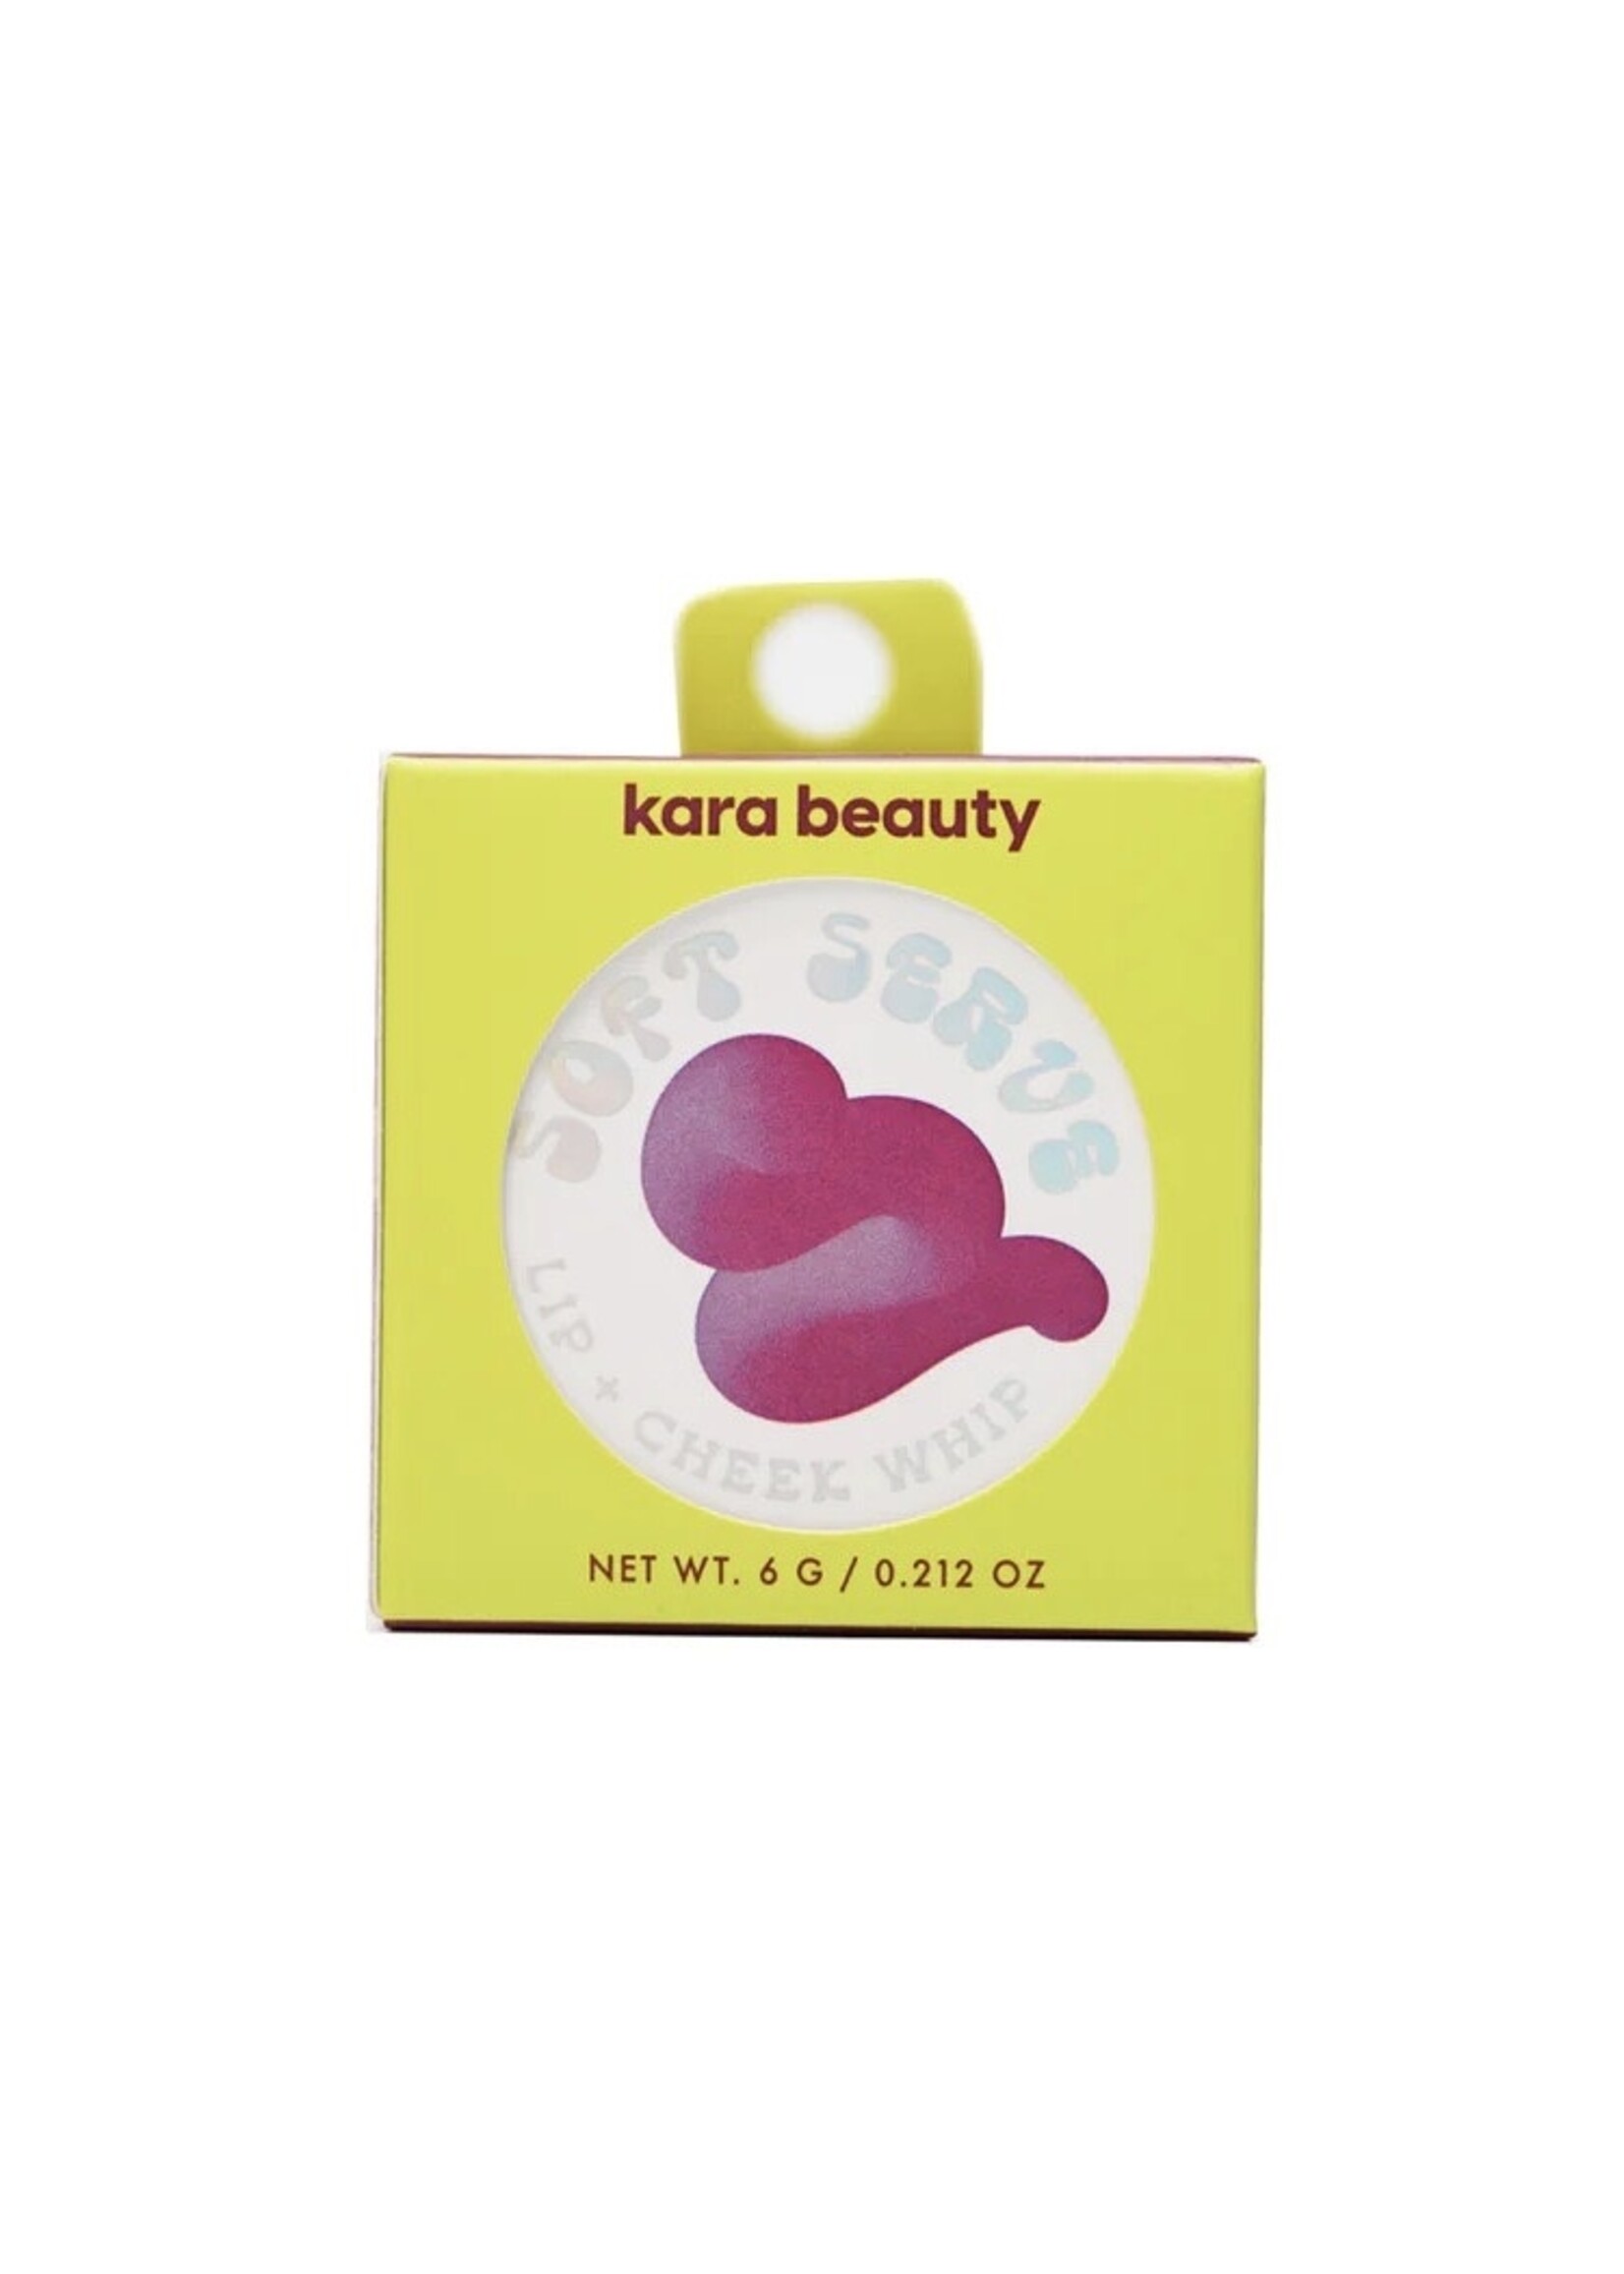 Kara Beauty Crèmes fouettées pour les lèvres et joues "Soft Serve" par Kara Beauty